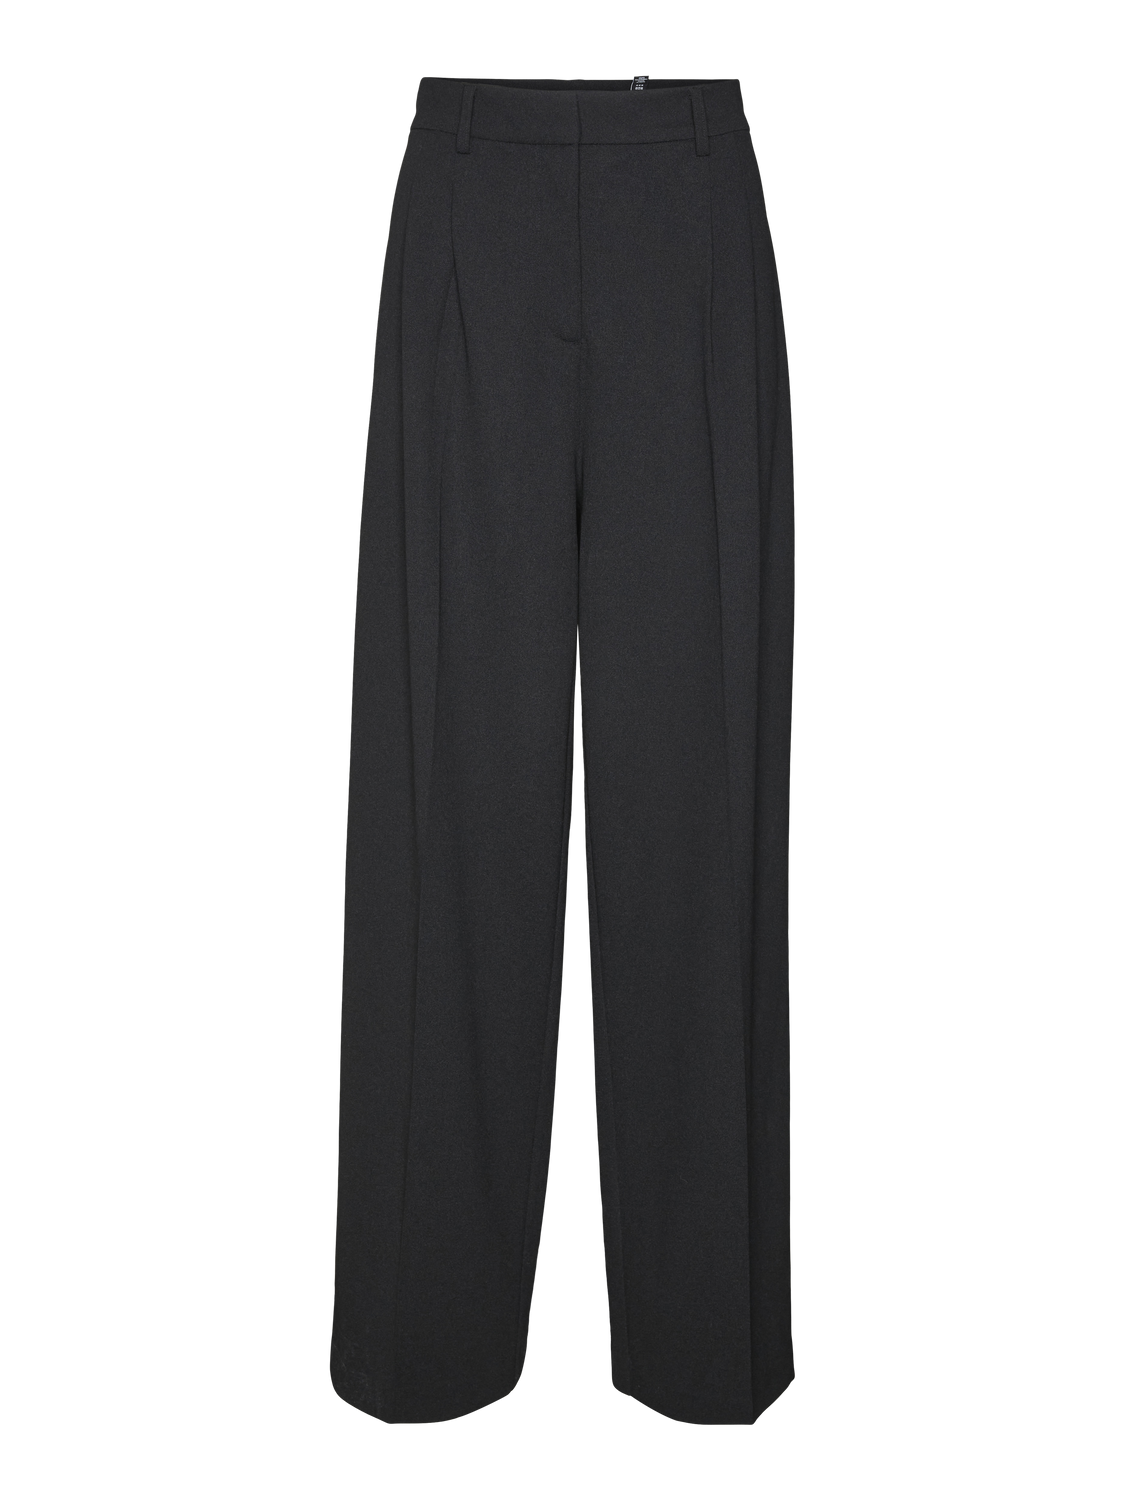 Vero Moda VMLIVA Cintura media Pantalones -Black - 10321276